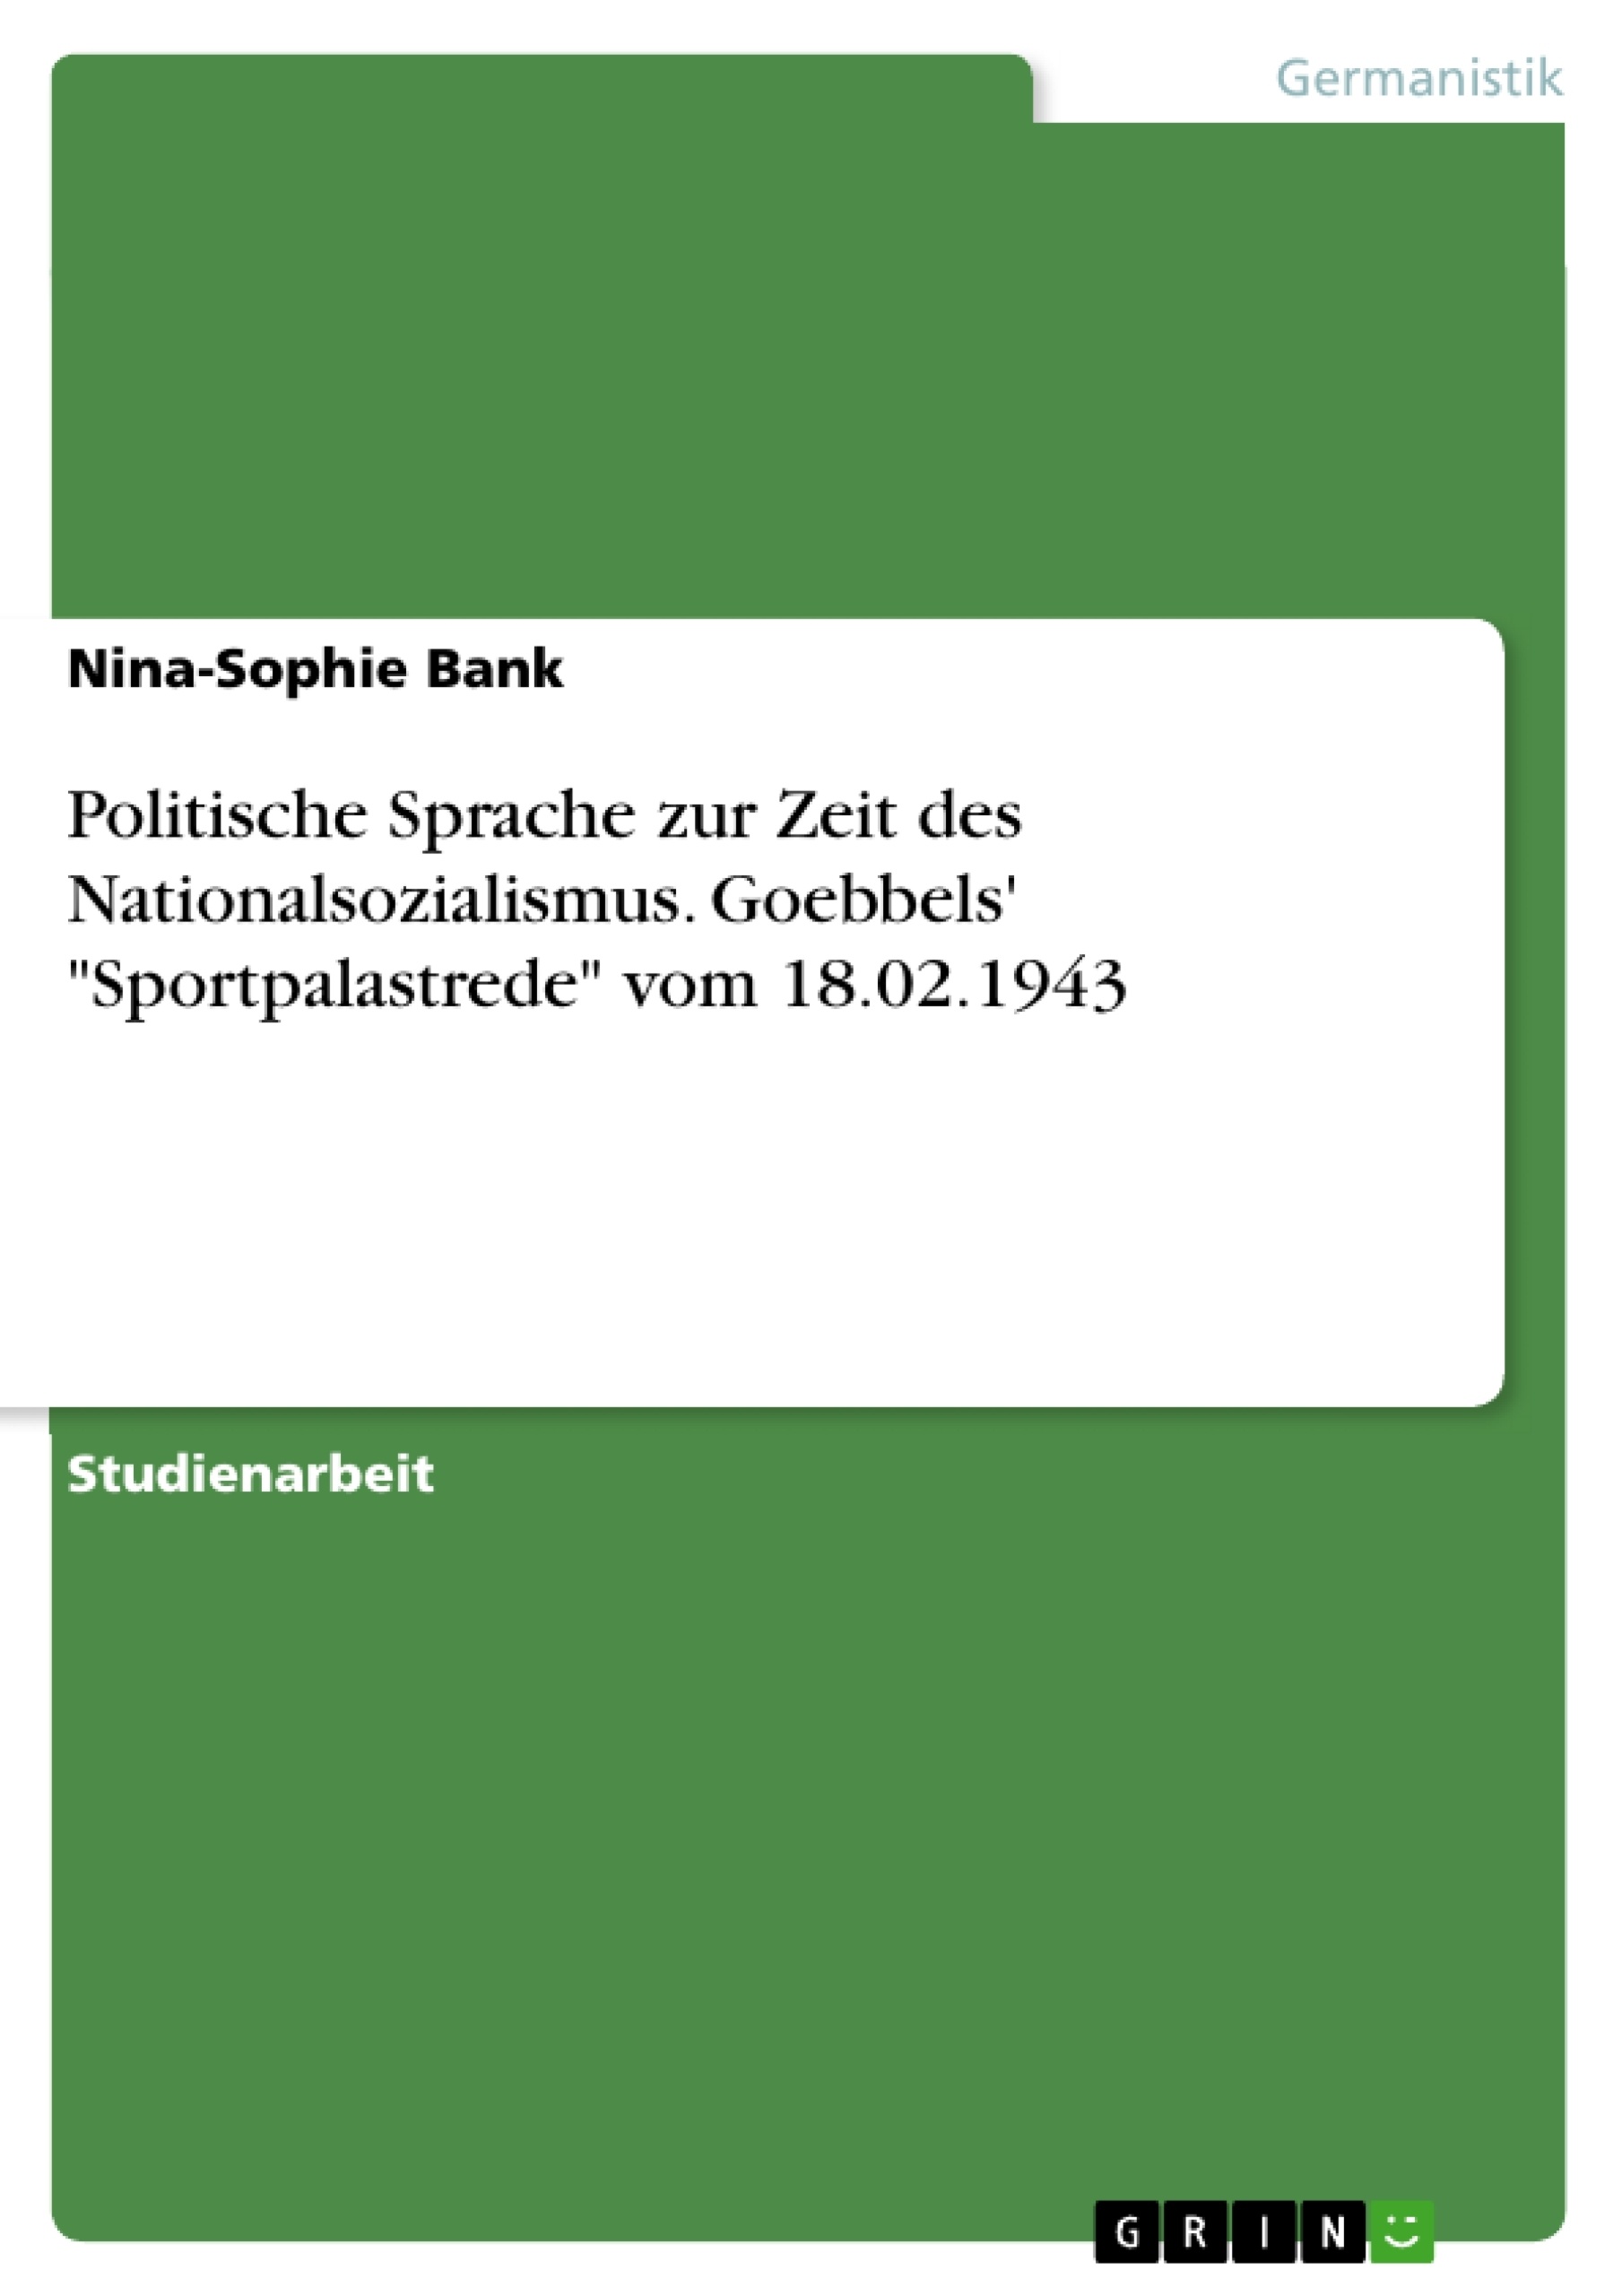 Titel: Politische Sprache zur Zeit des Nationalsozialismus. Goebbels' "Sportpalastrede" vom 18.02.1943